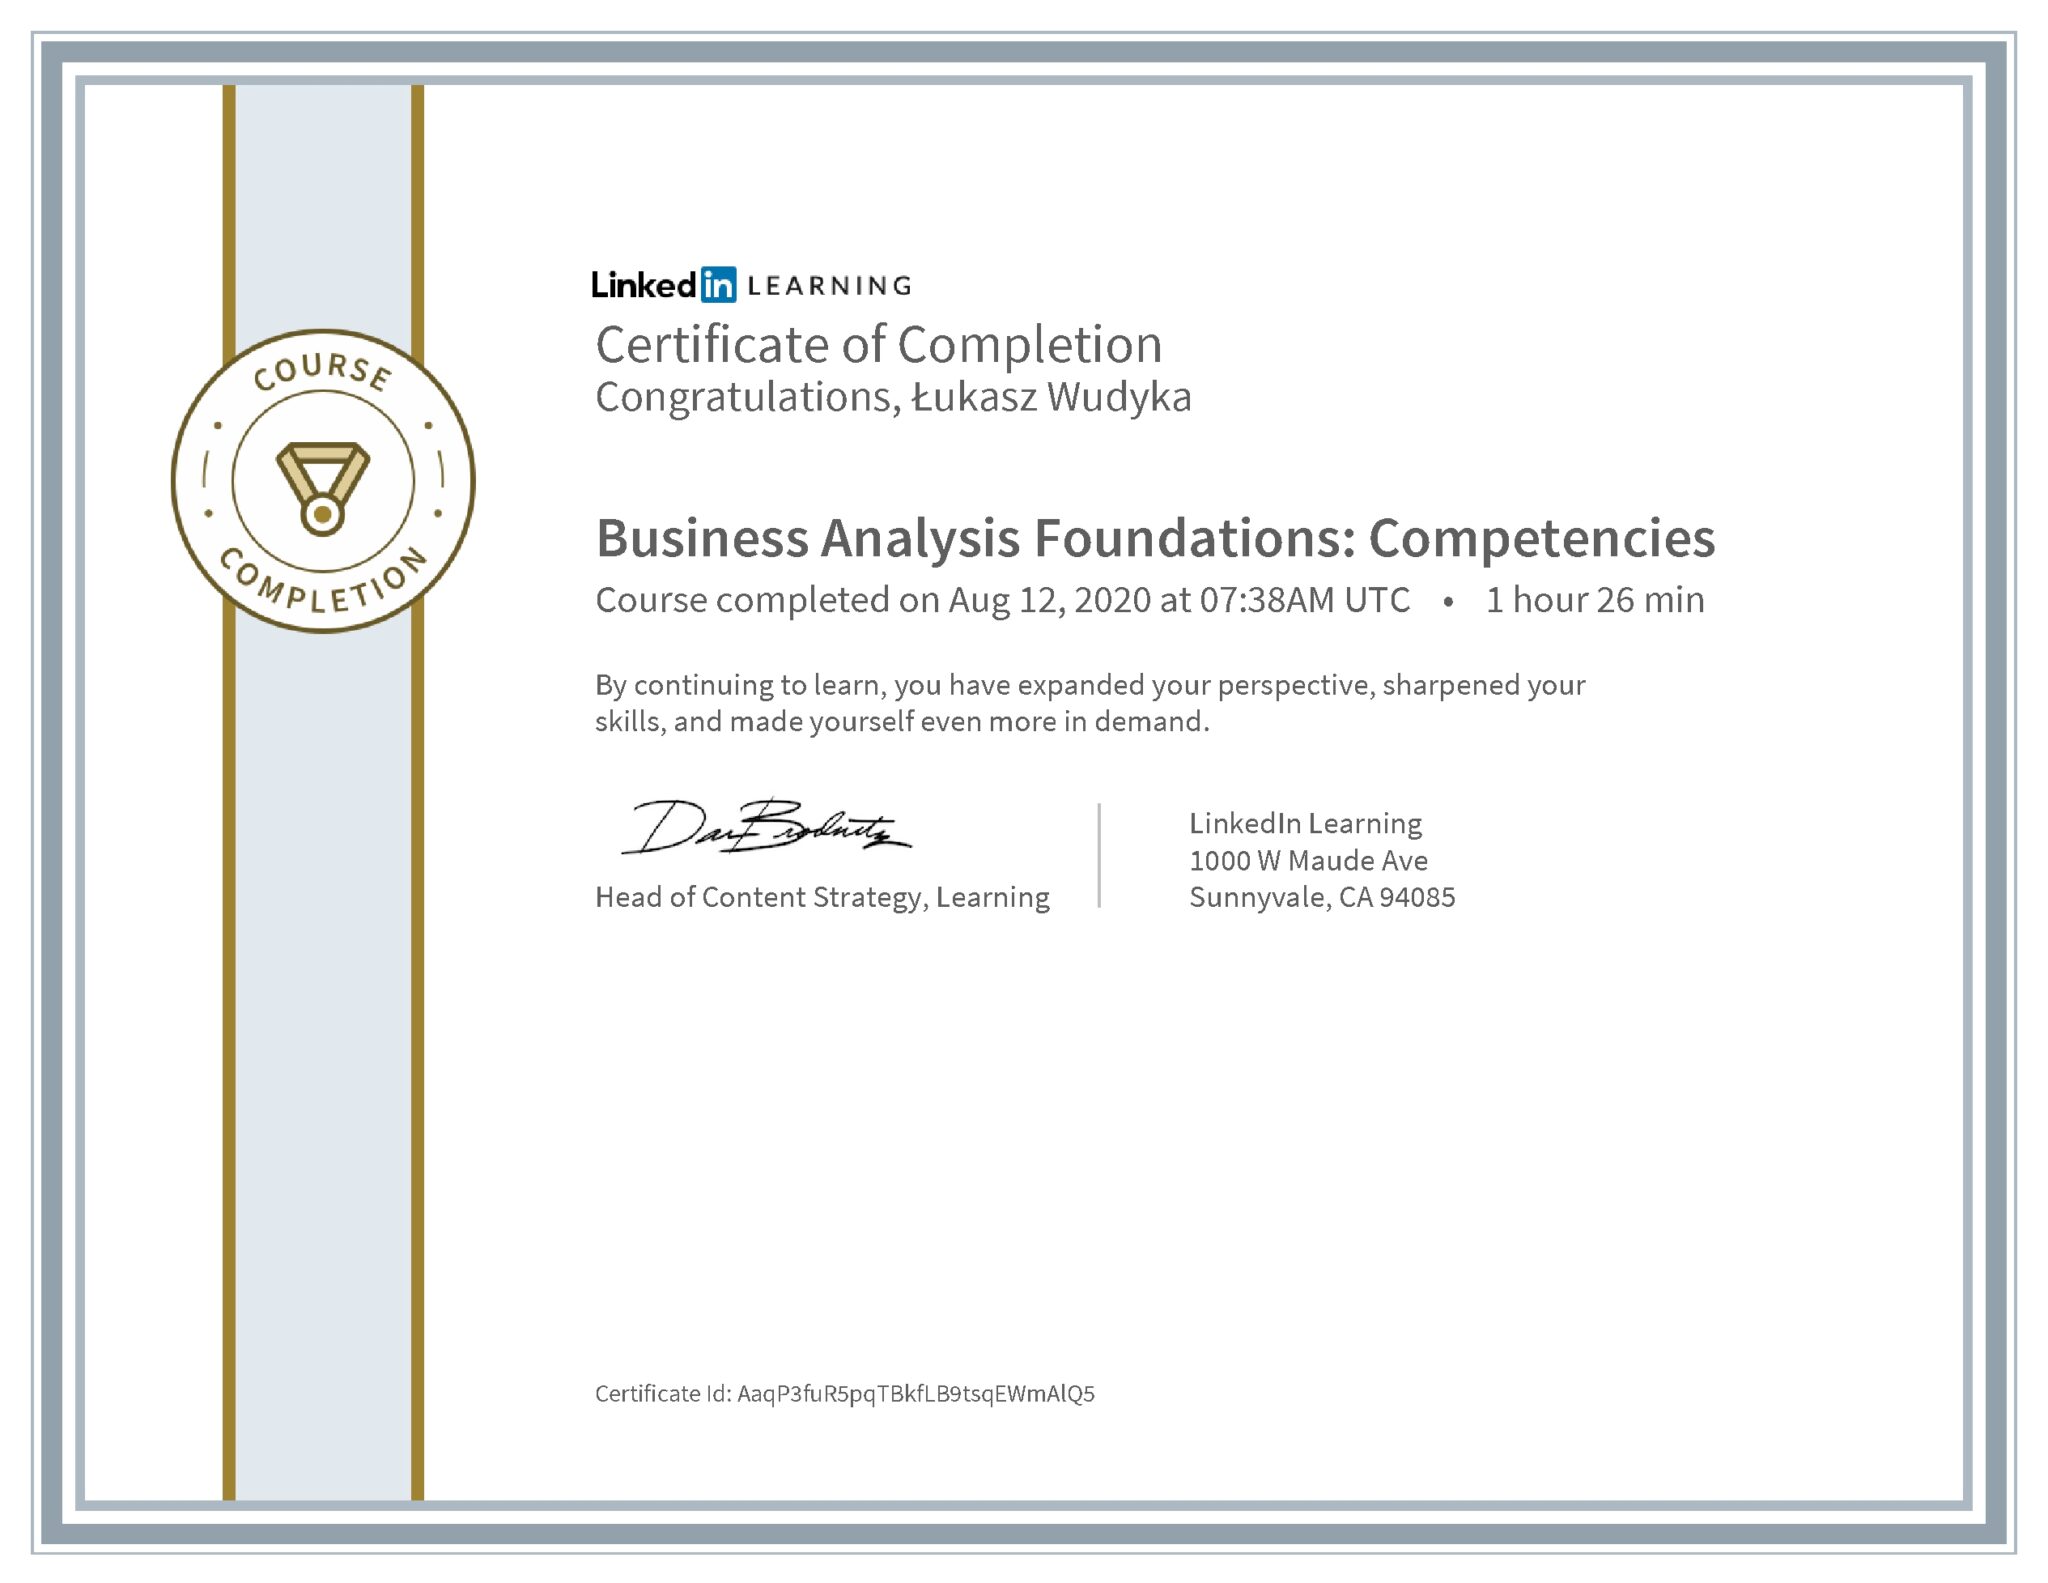 Łukasz Wudyka certyfikat LinkedIn Business Analysis Foundations: Competencies